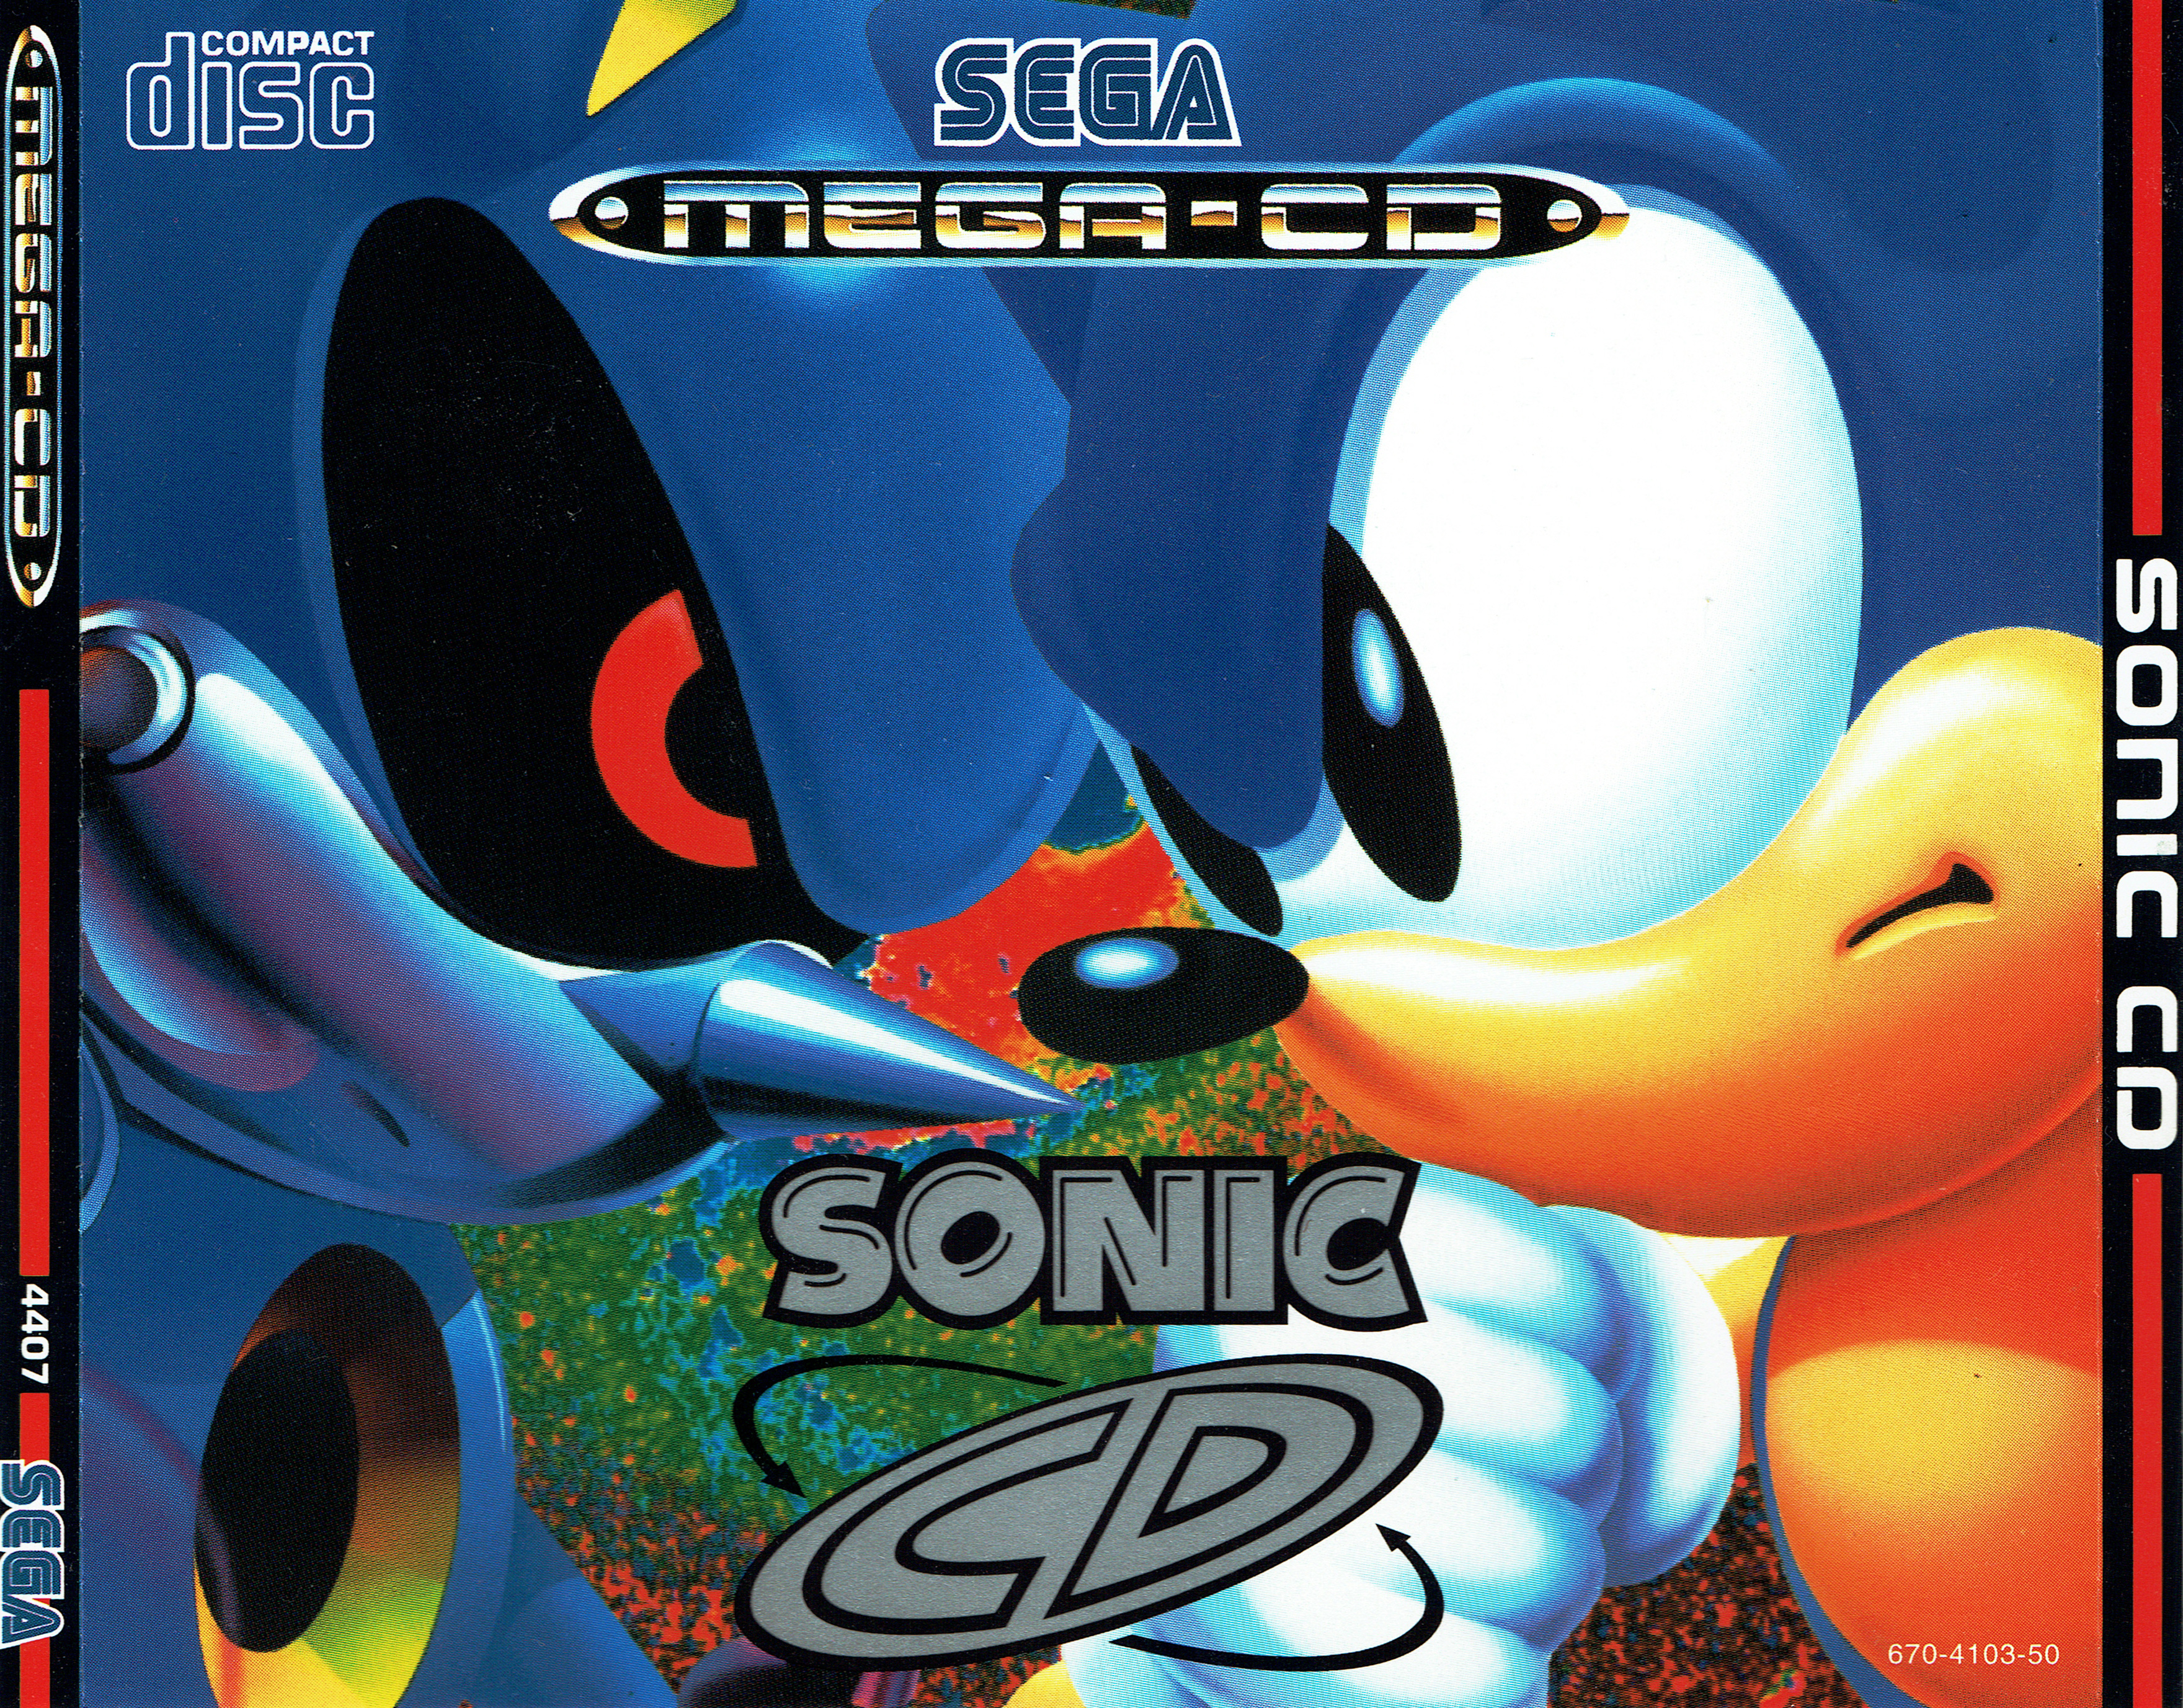 Sonic jp. Sonic CD Sega CD 1993. Sonic CD Sega Mega CD. Компакт-диск Sonic the Hedgehog (1993) (Sega) (jp). Sonic CD Sega картридж.